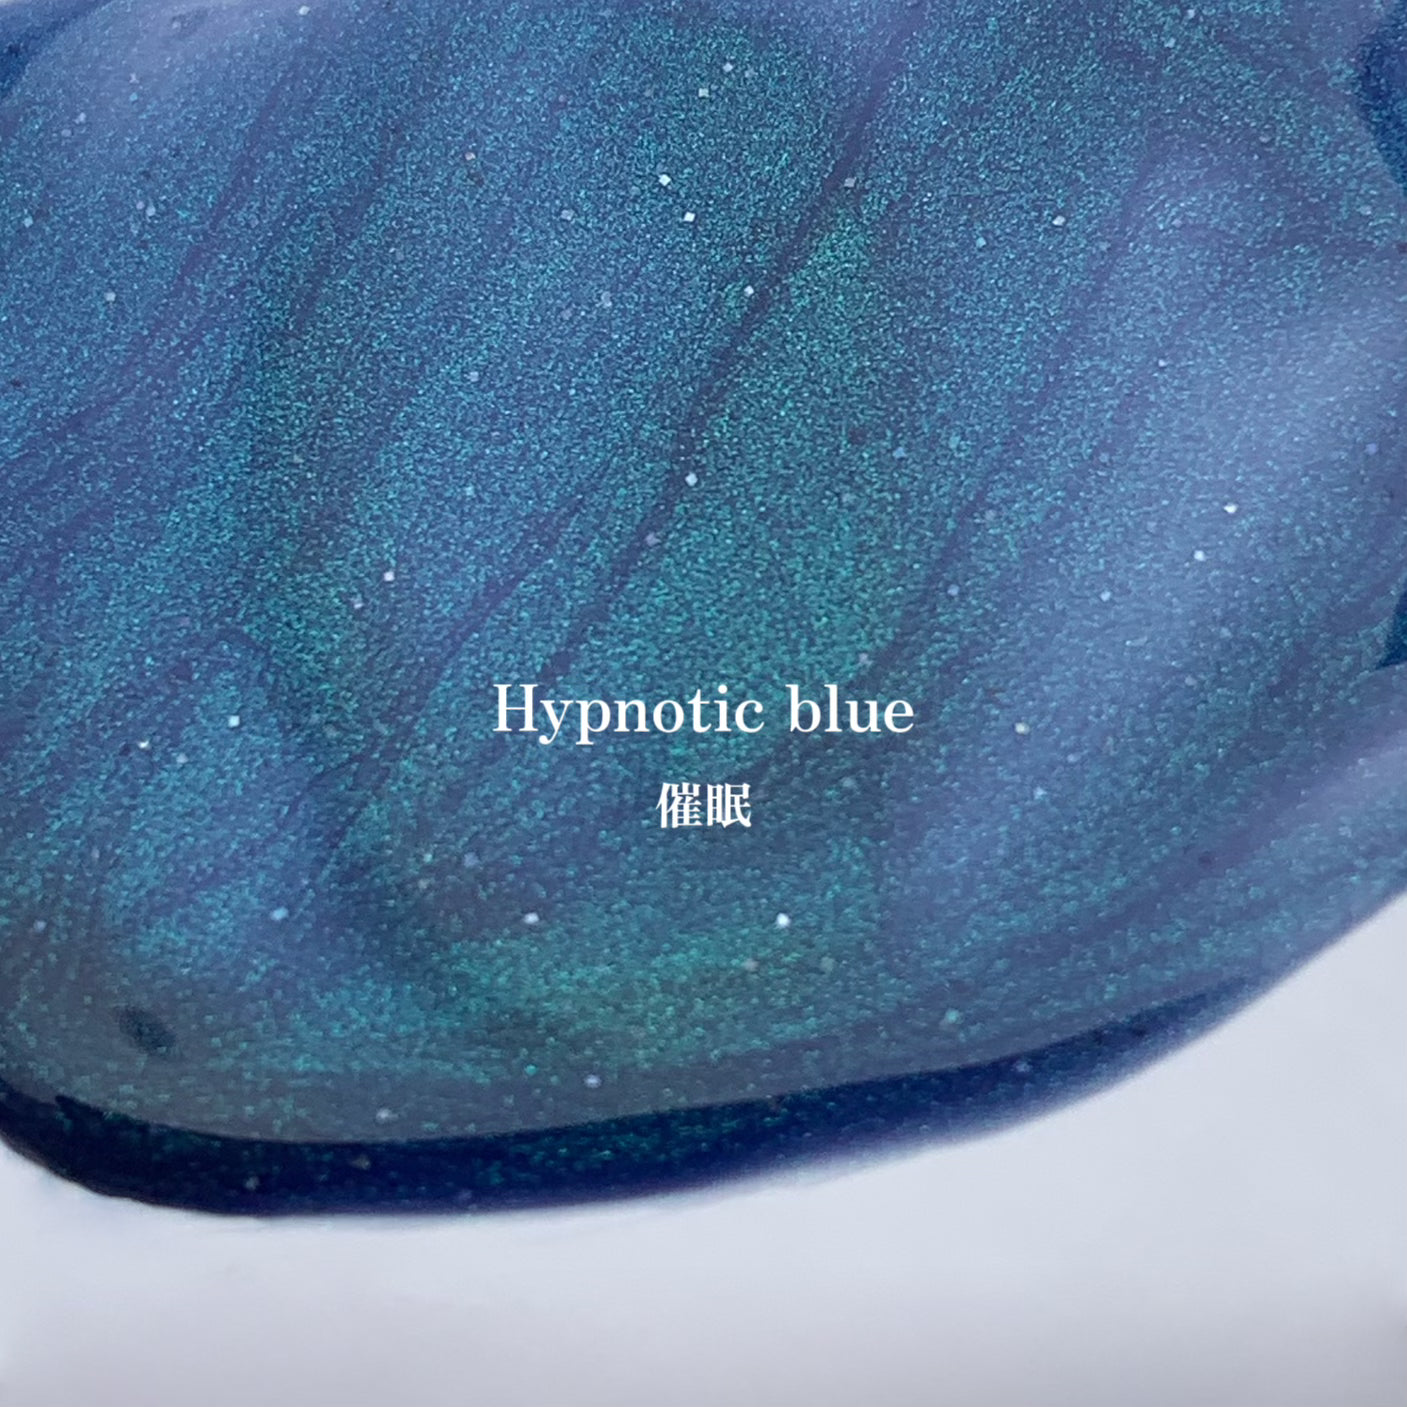 【9月26日再販】Hypnotic blue